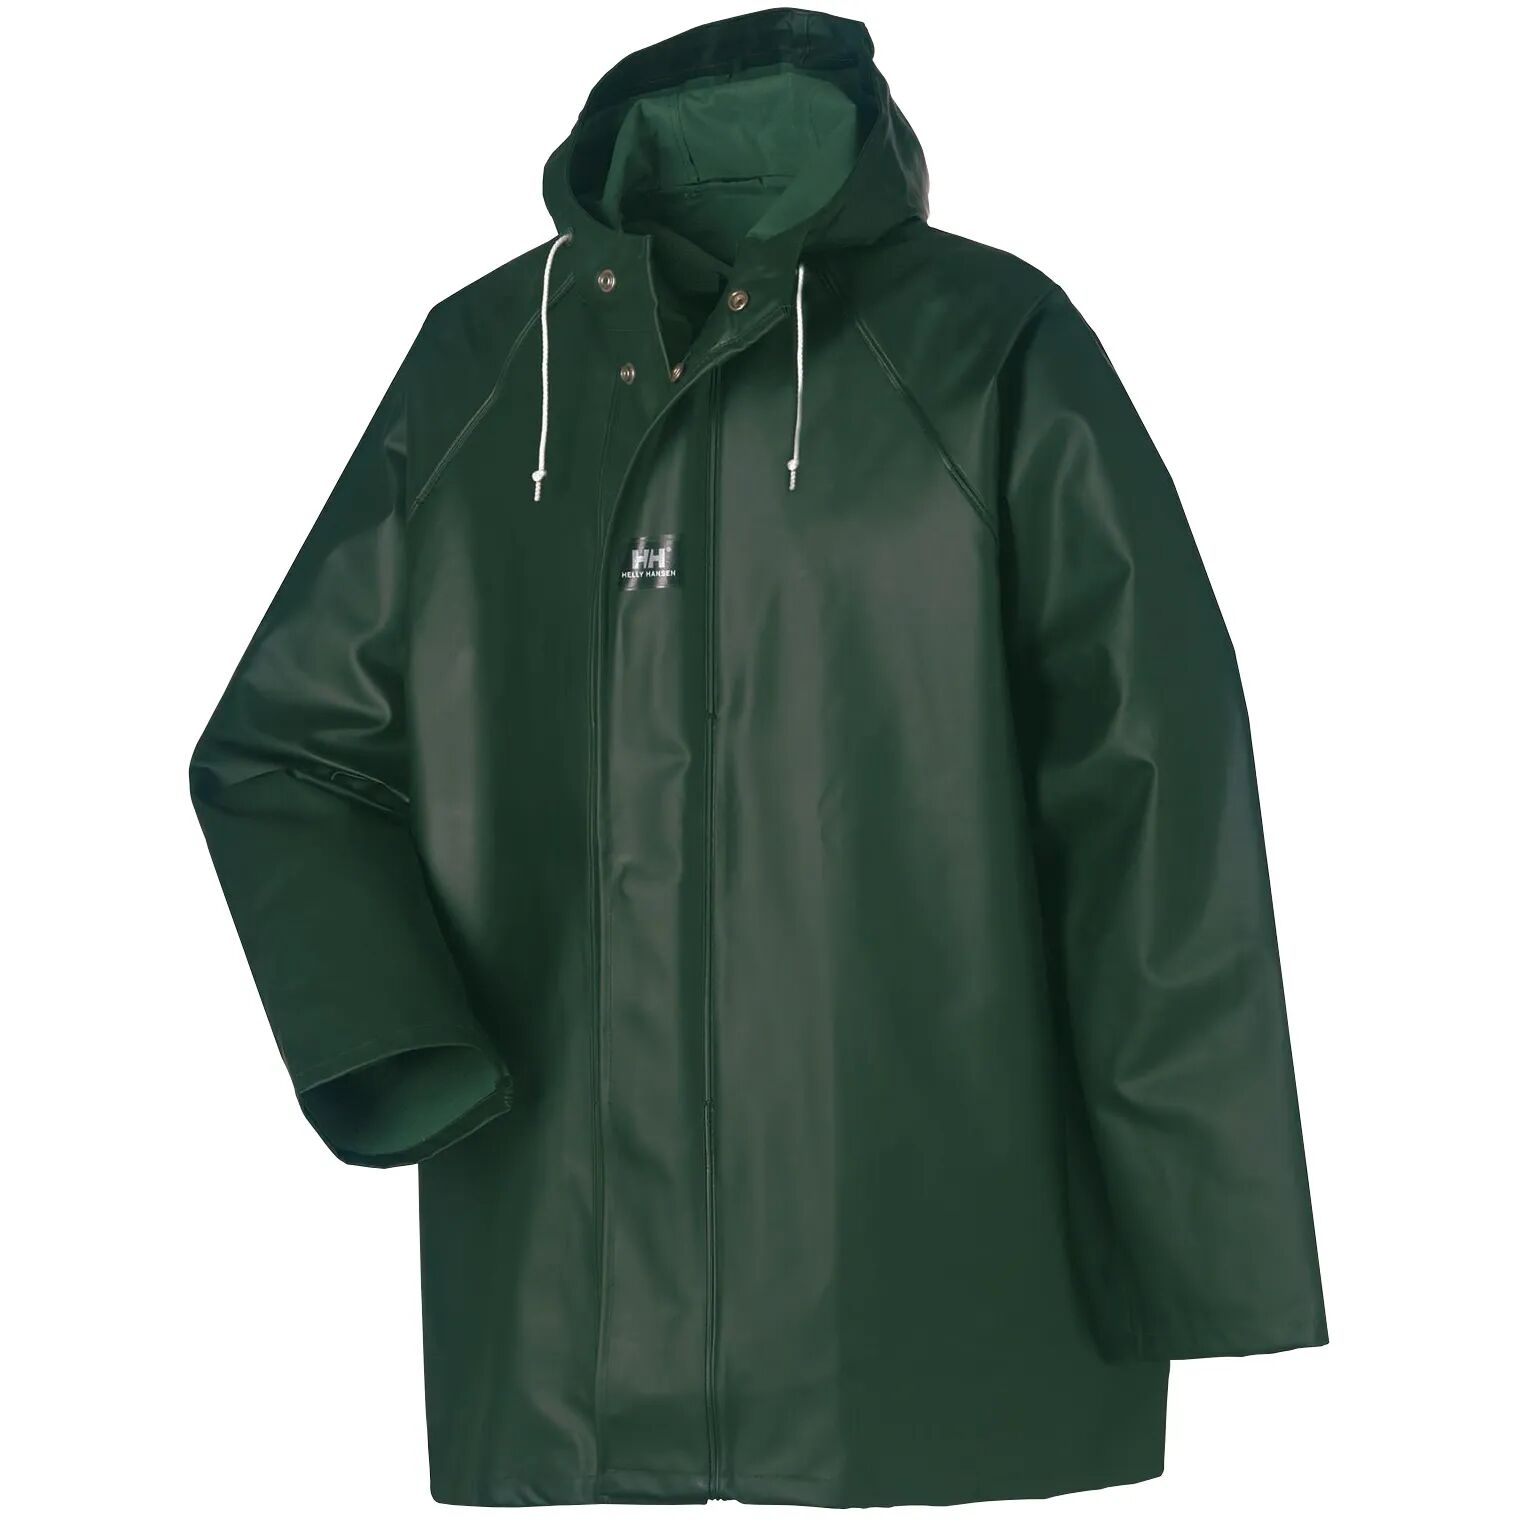 HH Workwear Helly Hansen WorkwearHighliner 100% Cotton Waterproof Jacket Green XXXL